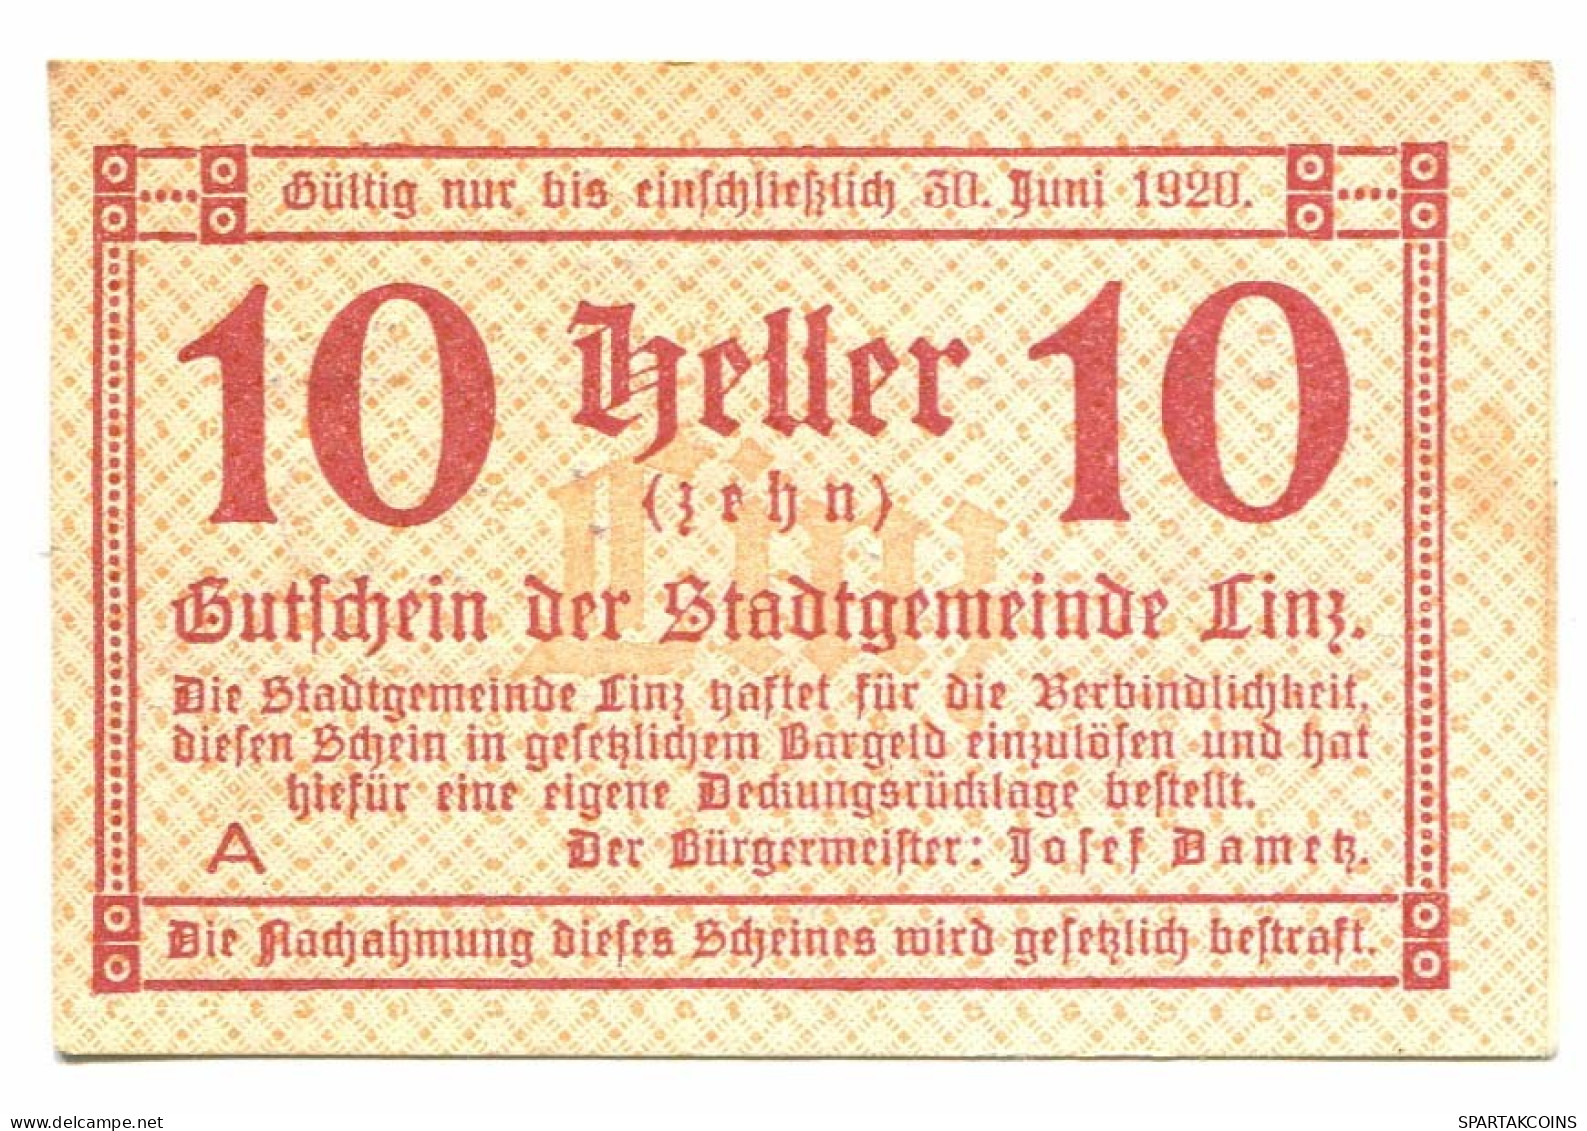 10 Heller 1920 LINZ Österreich UNC Notgeld Papiergeld Banknote #P10349 - [11] Local Banknote Issues